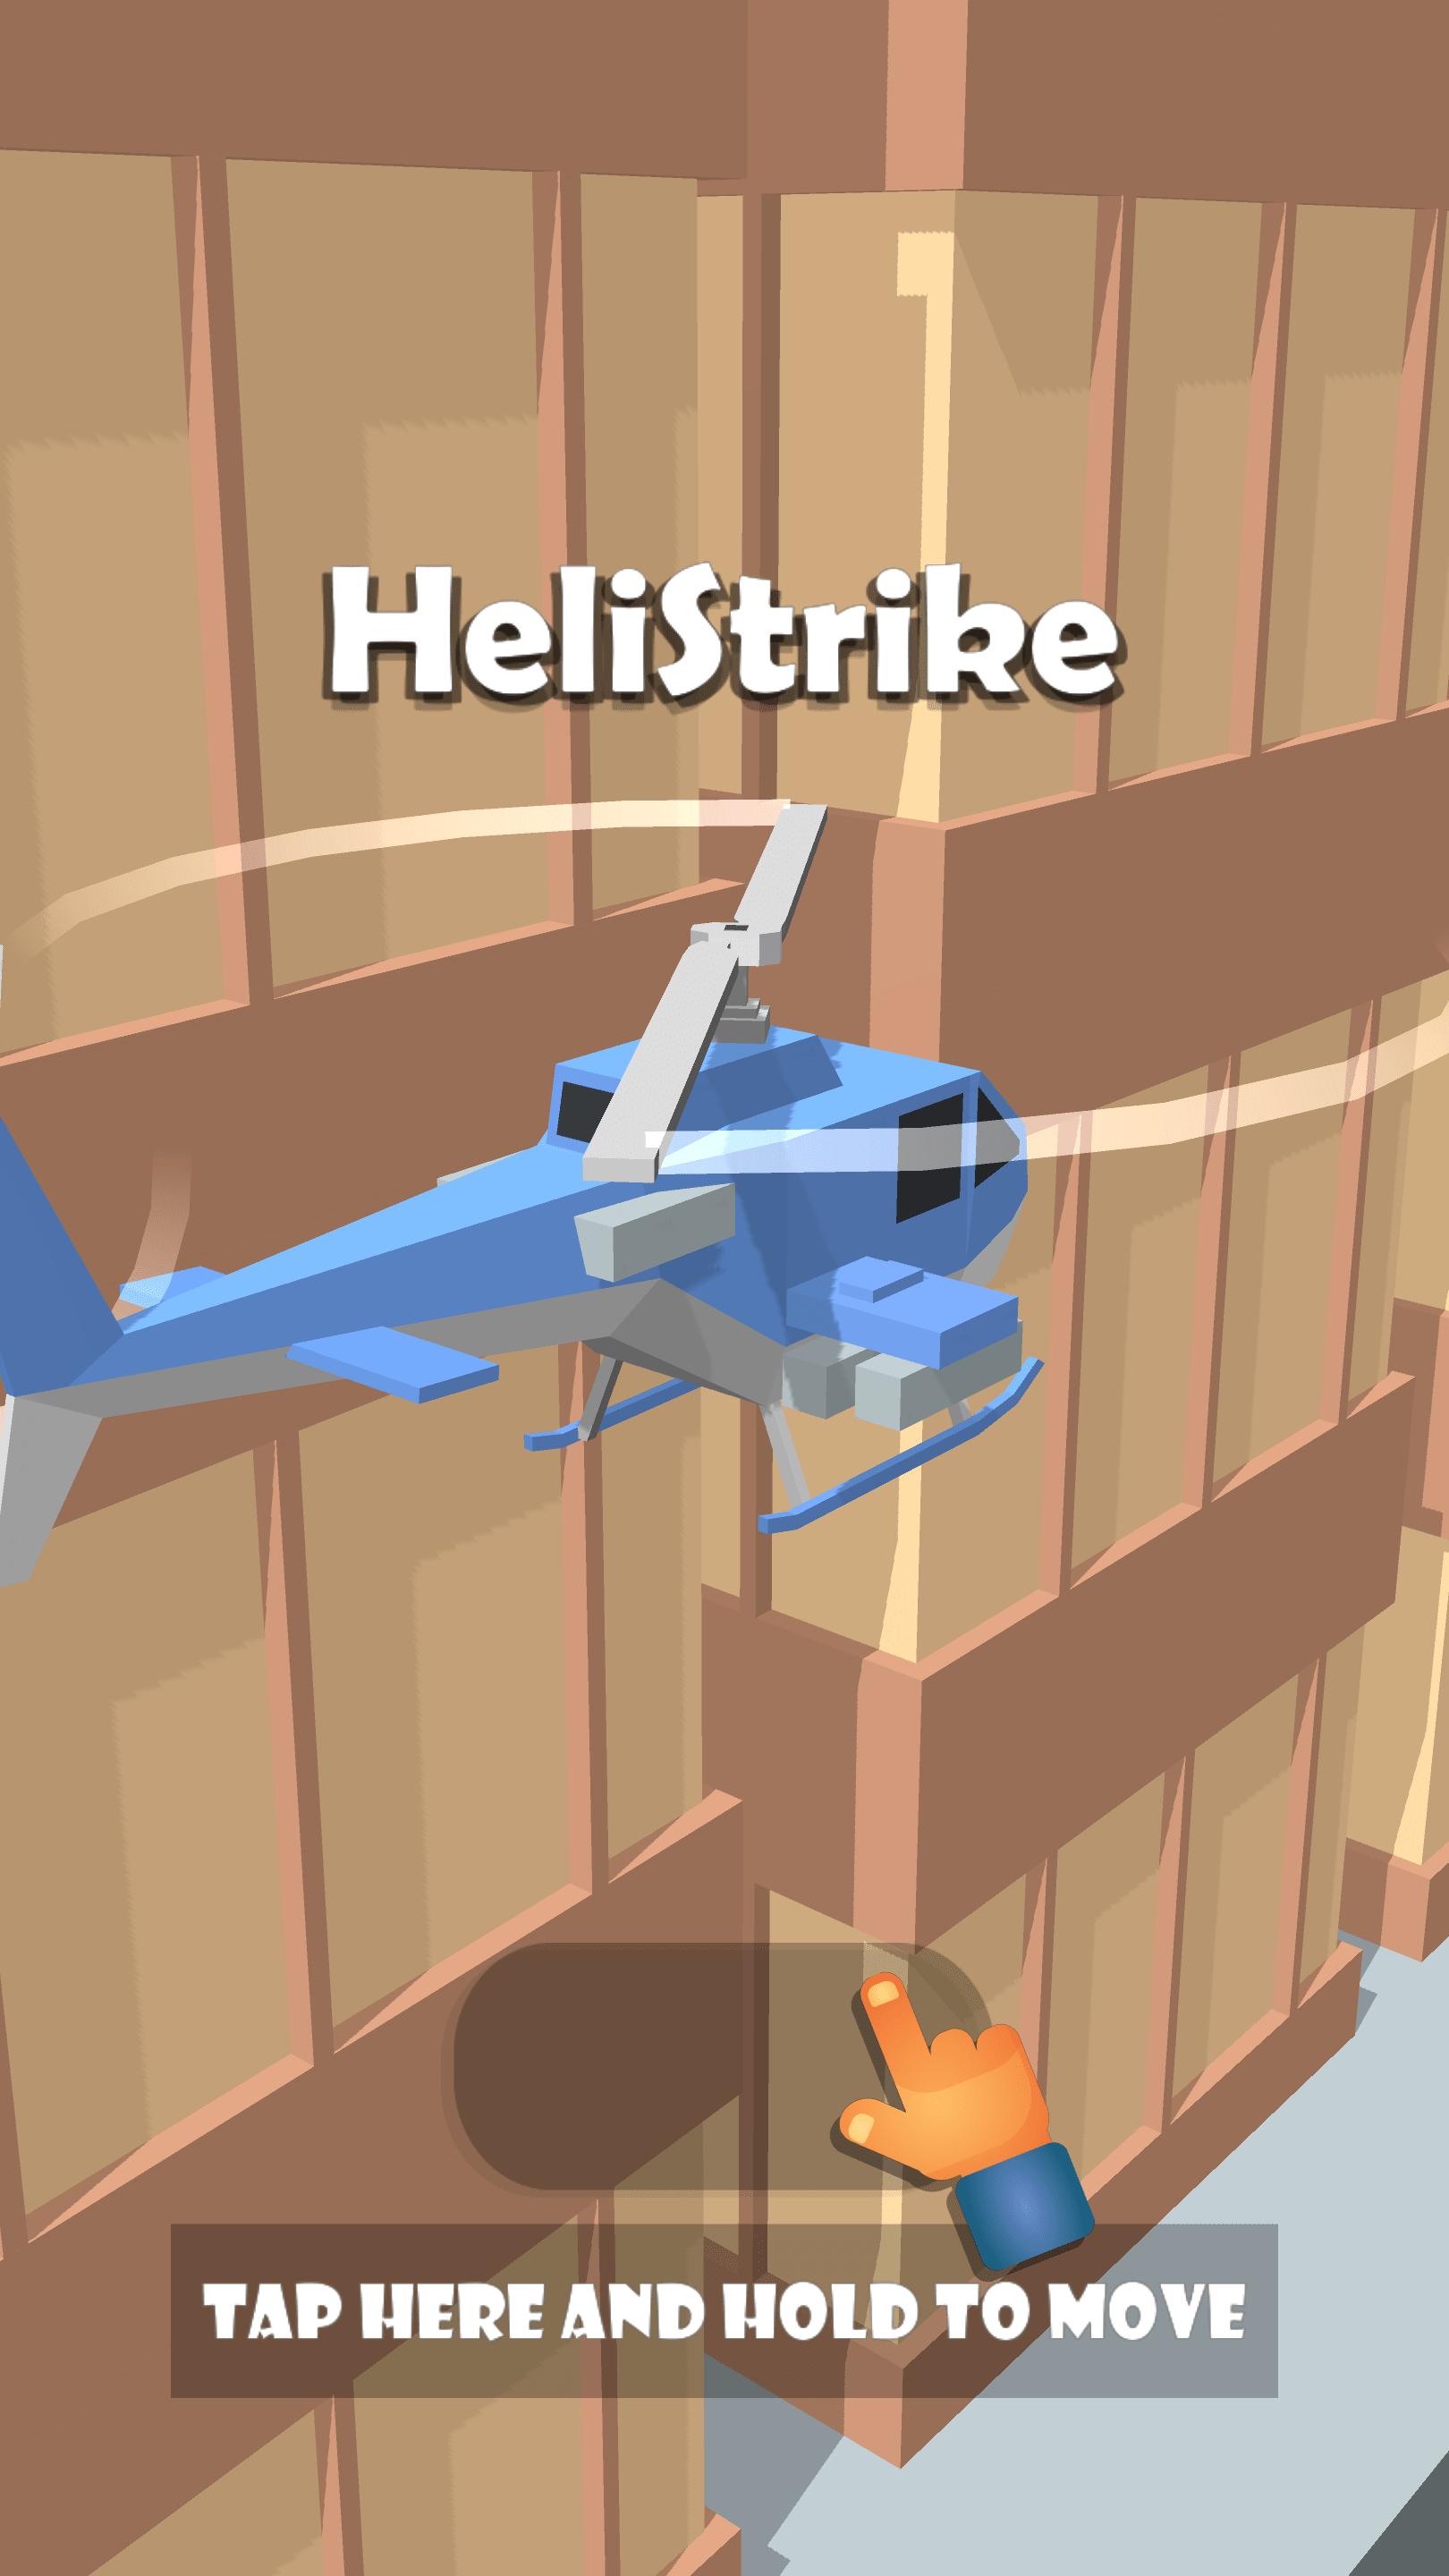 HeliStrike